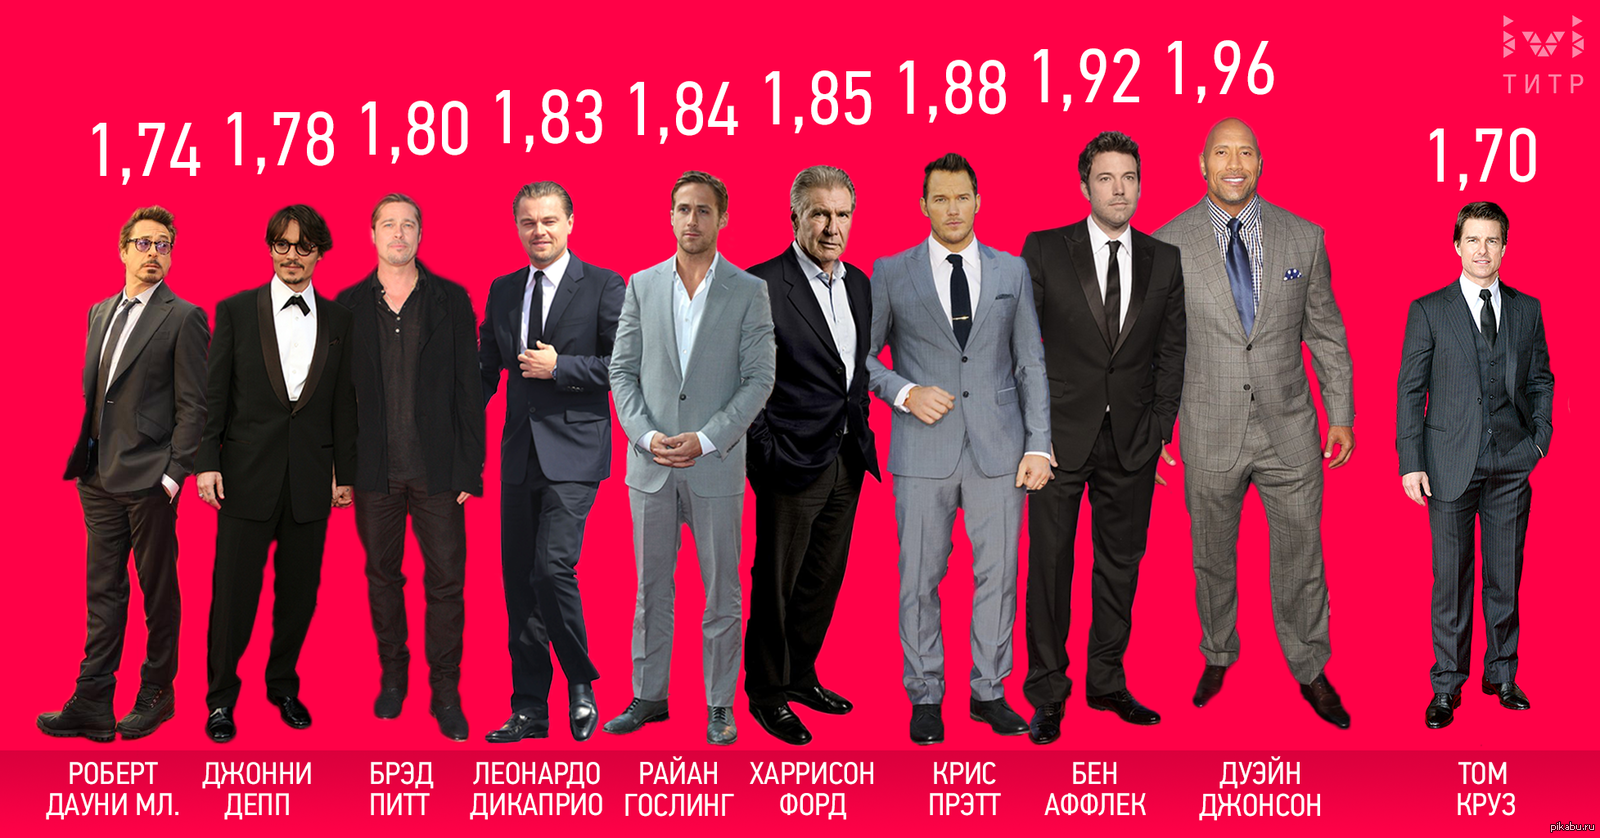 6 2 футов в см рост. Рост знаменитостей мужчин. Сравнение роста актеров. Рост актеров Голливуда.